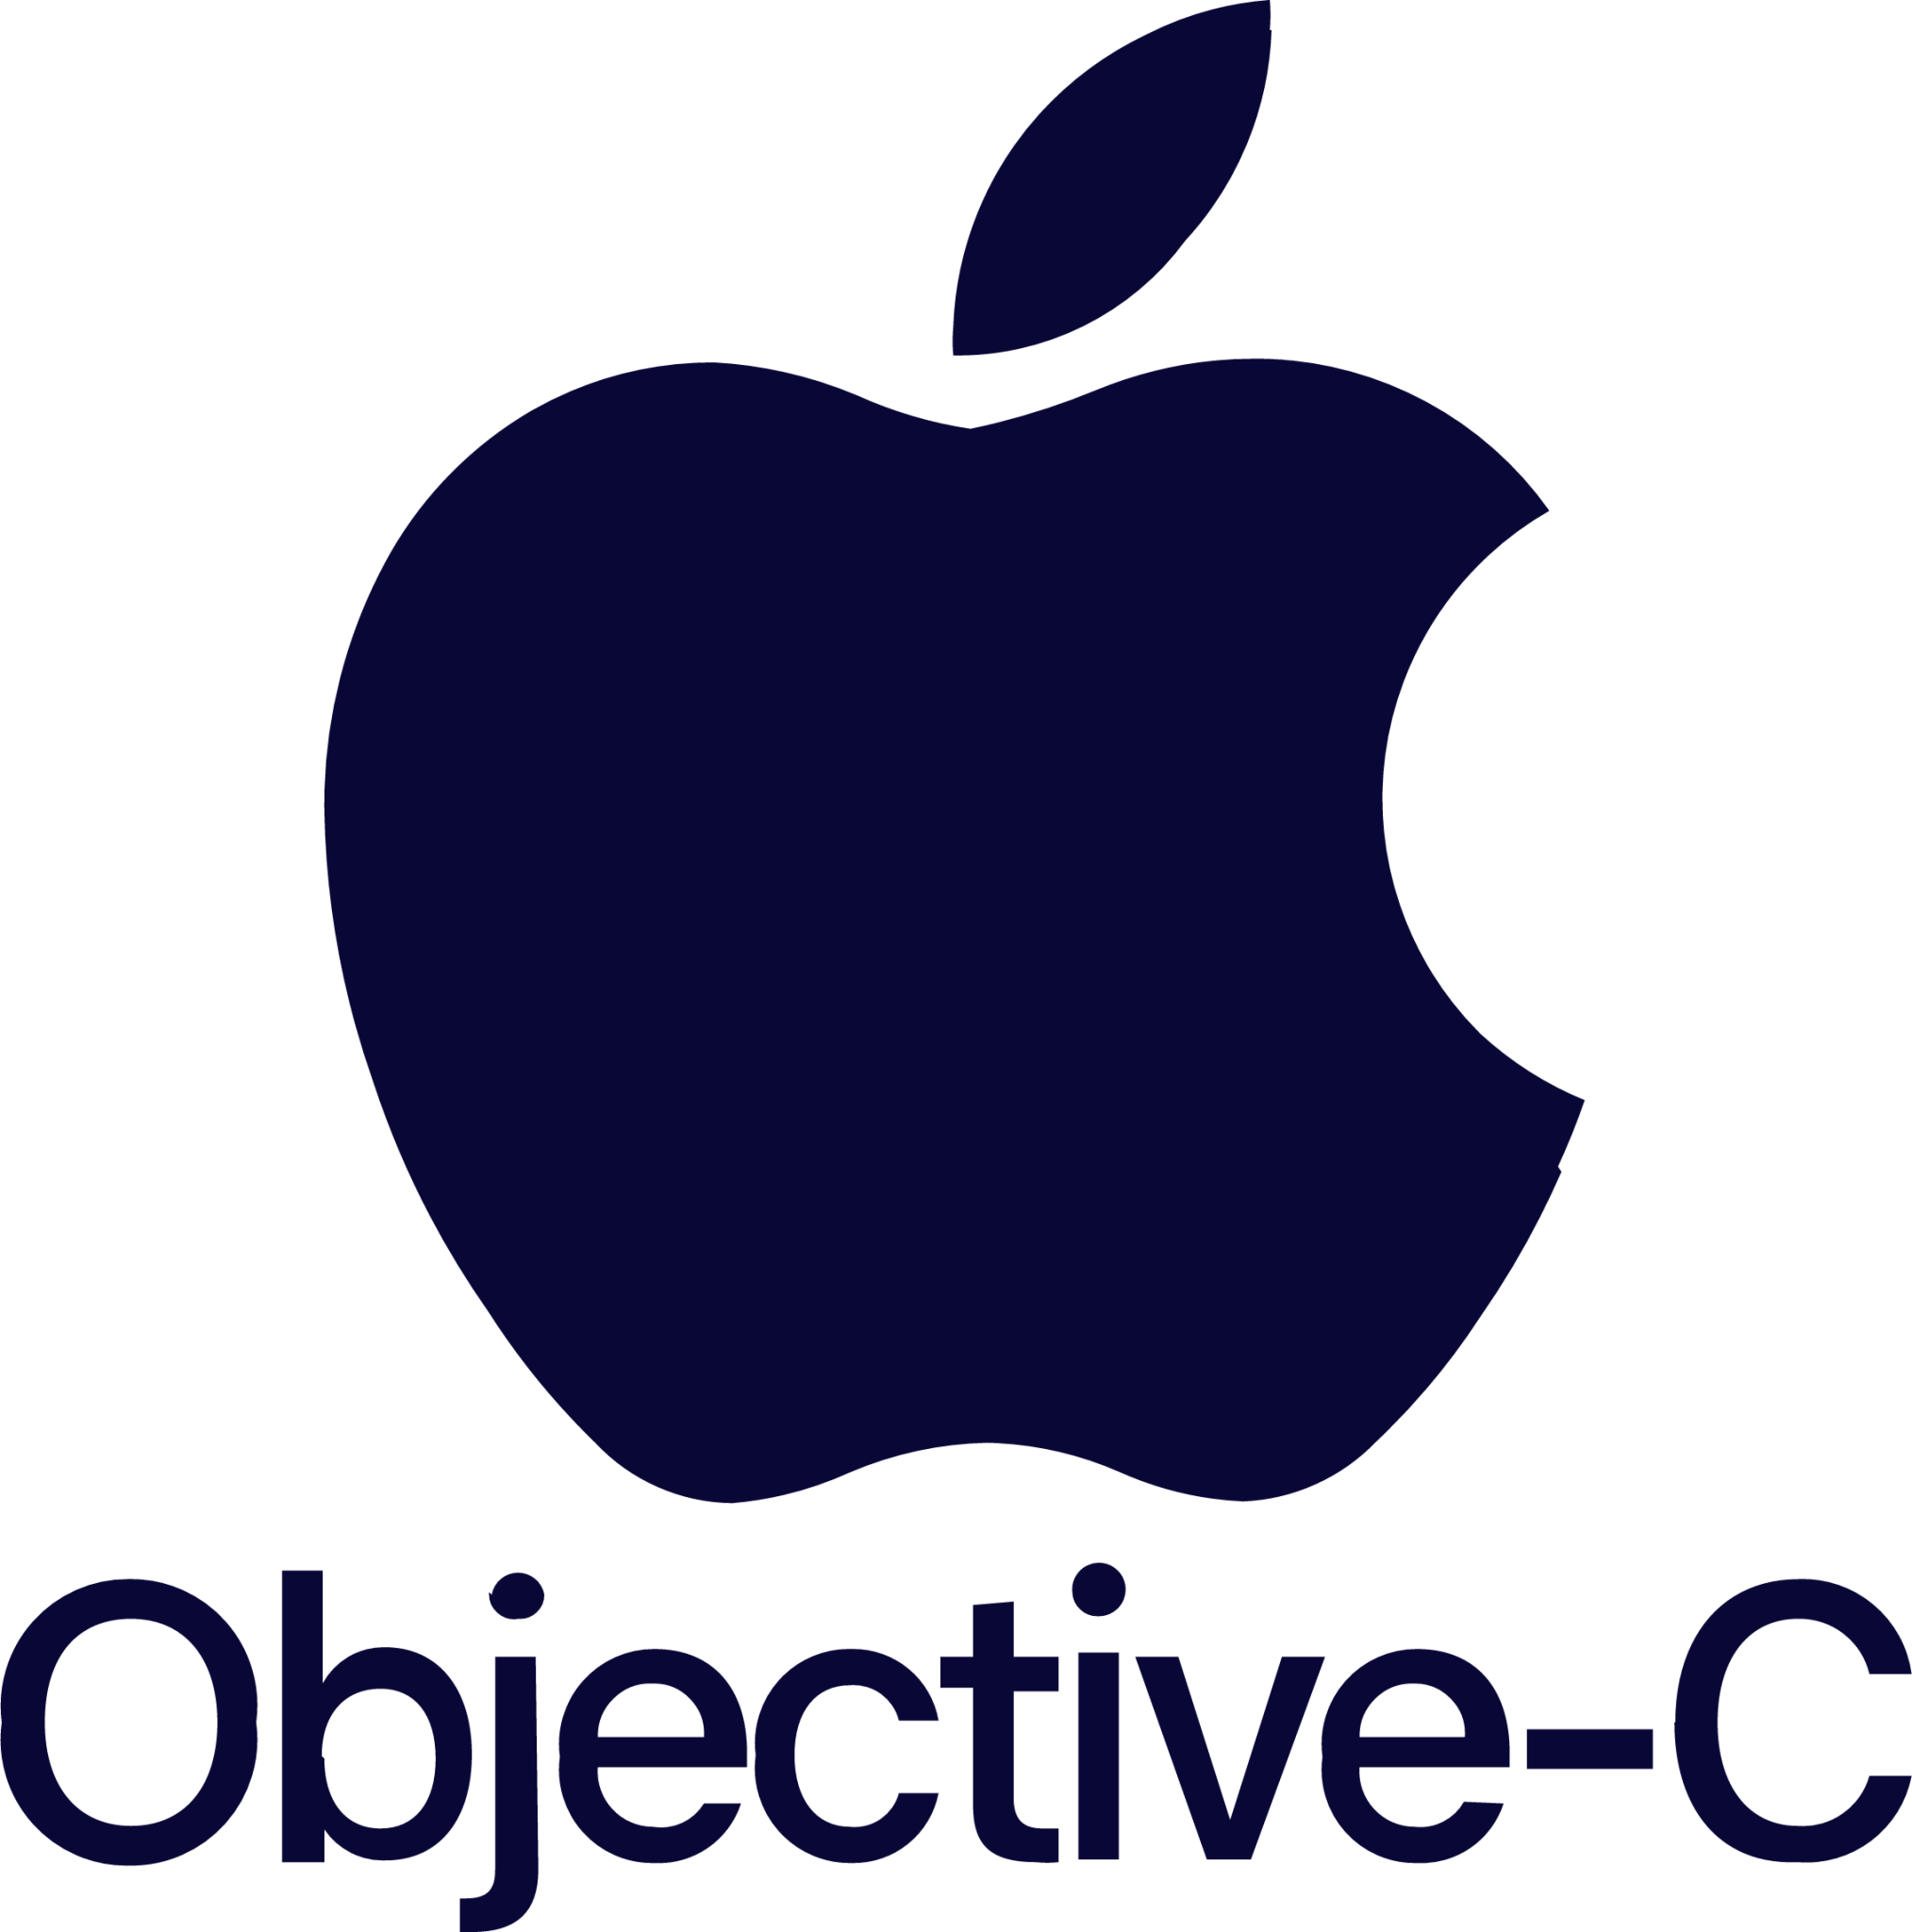 Objective-C (iOS)